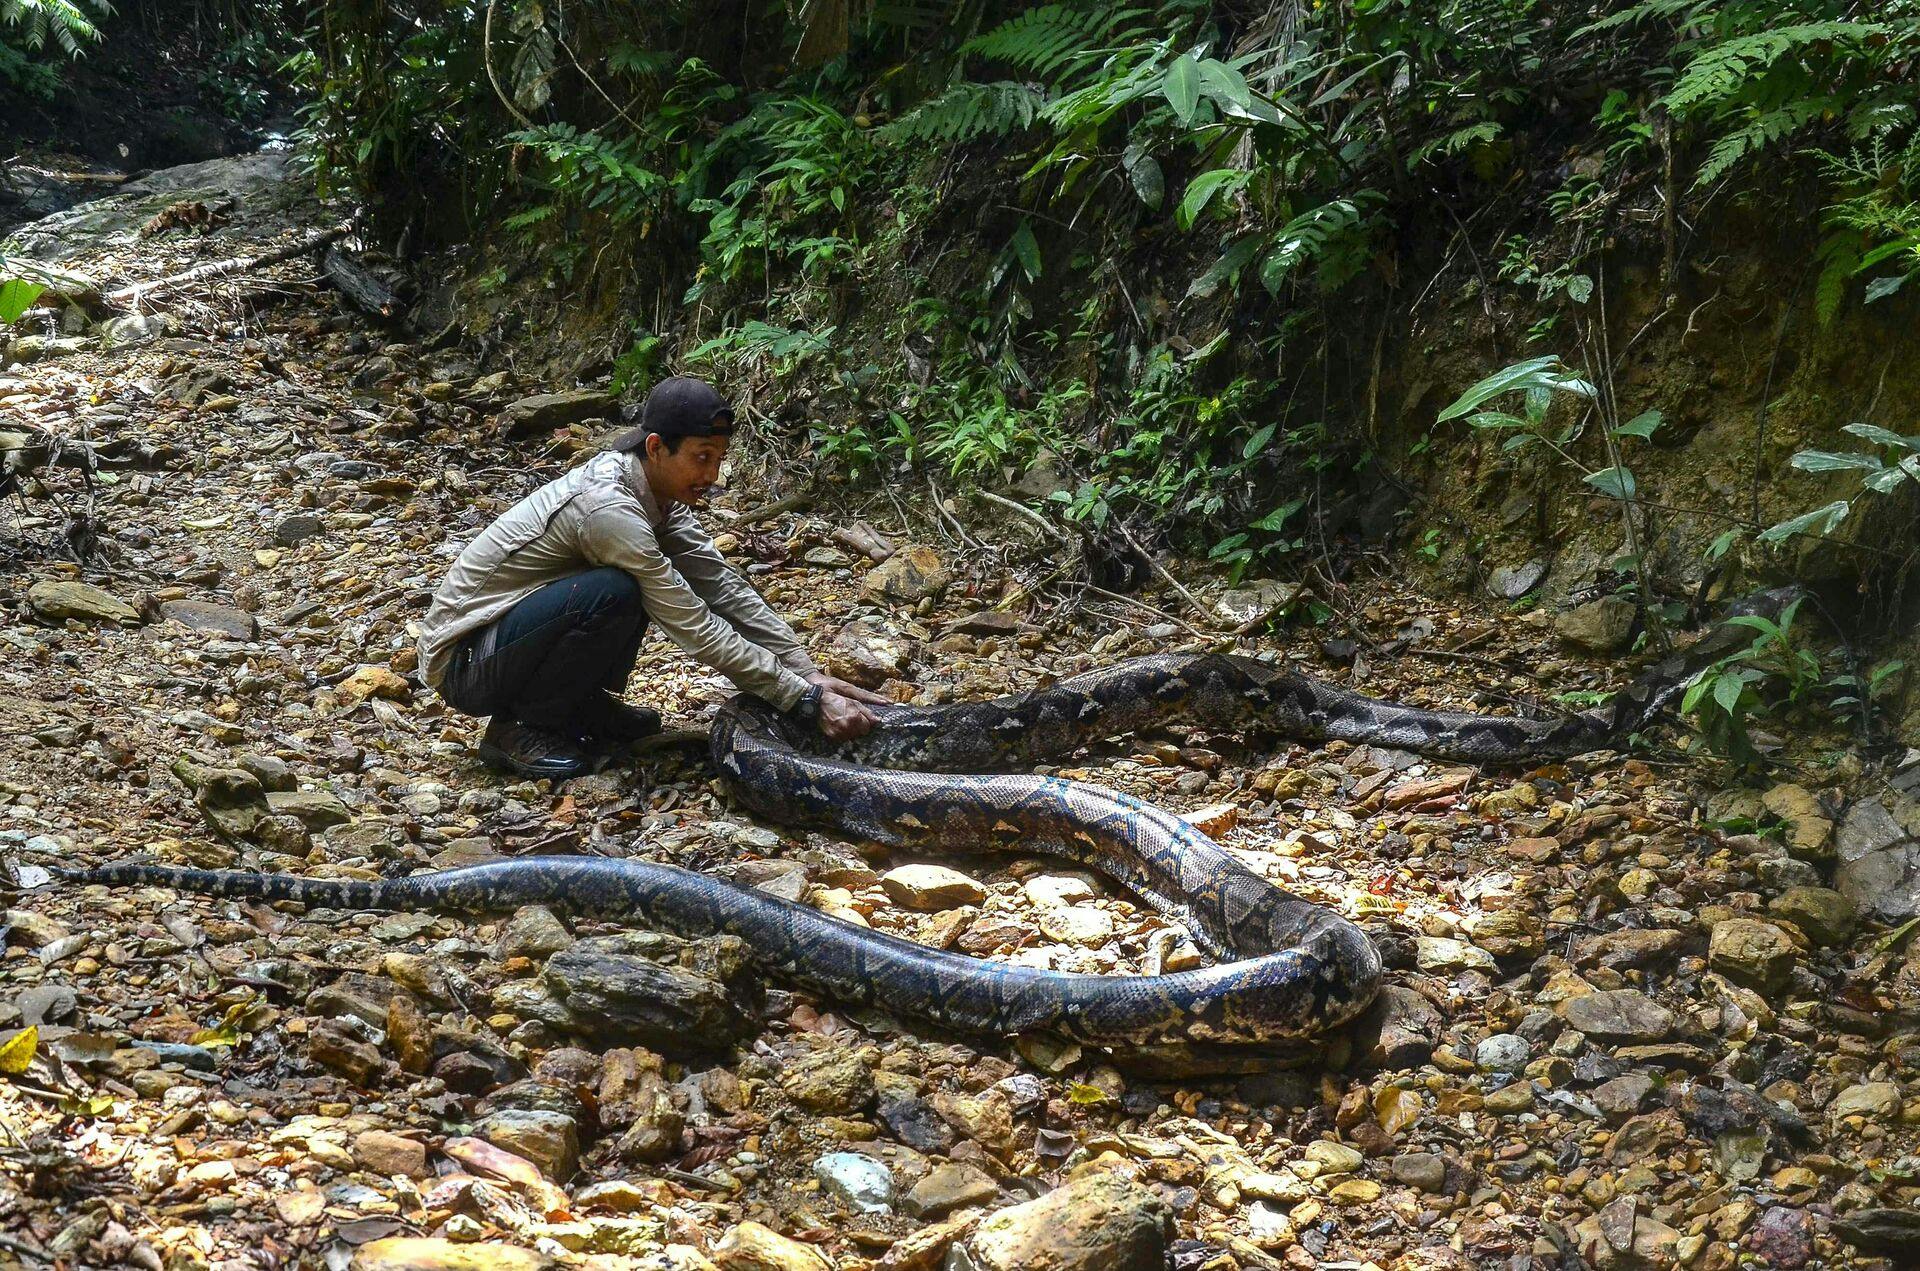 Det er sjældent, at slanger spiser mennesker, men det er alligevel sket flere gange i Indonesien. Senest tirsdag. Her ses en ni meter lang pytonslange, som i 2021 blev indfanget i landet.